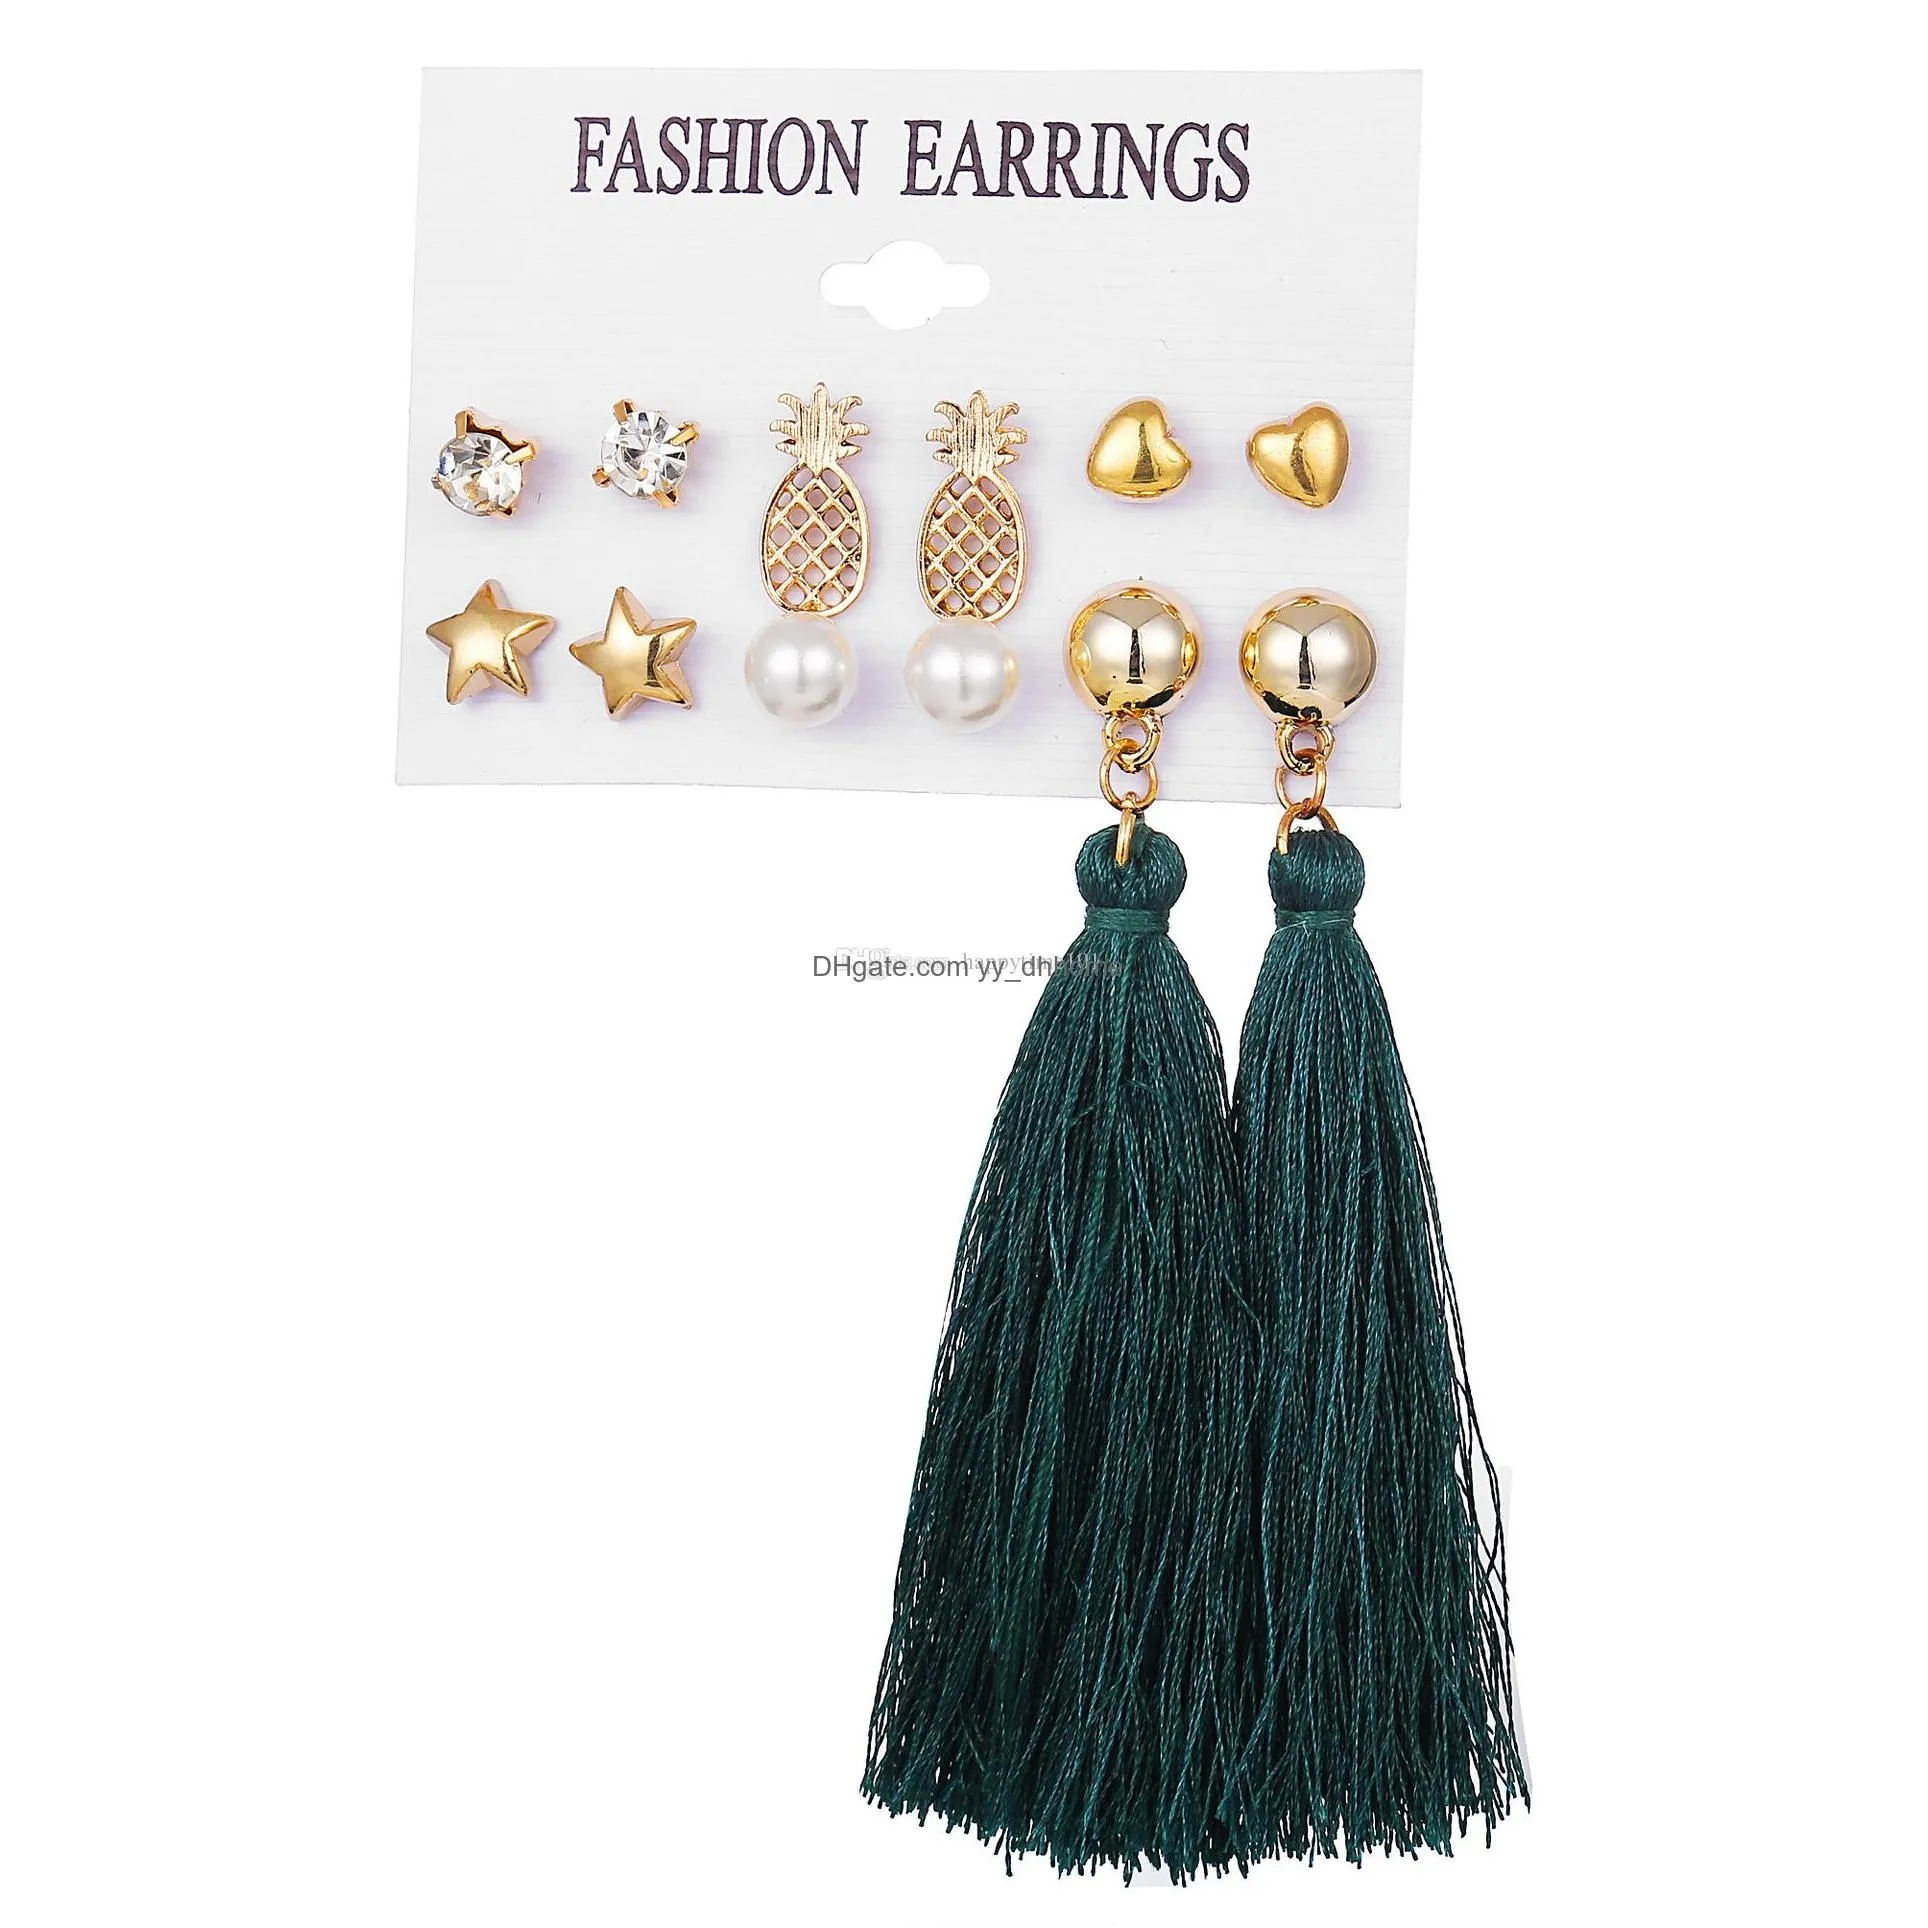 colorful earrings long fringe dangle earrings set for women party jewelry fan tassel earings fashion tread for ladies charm pendant